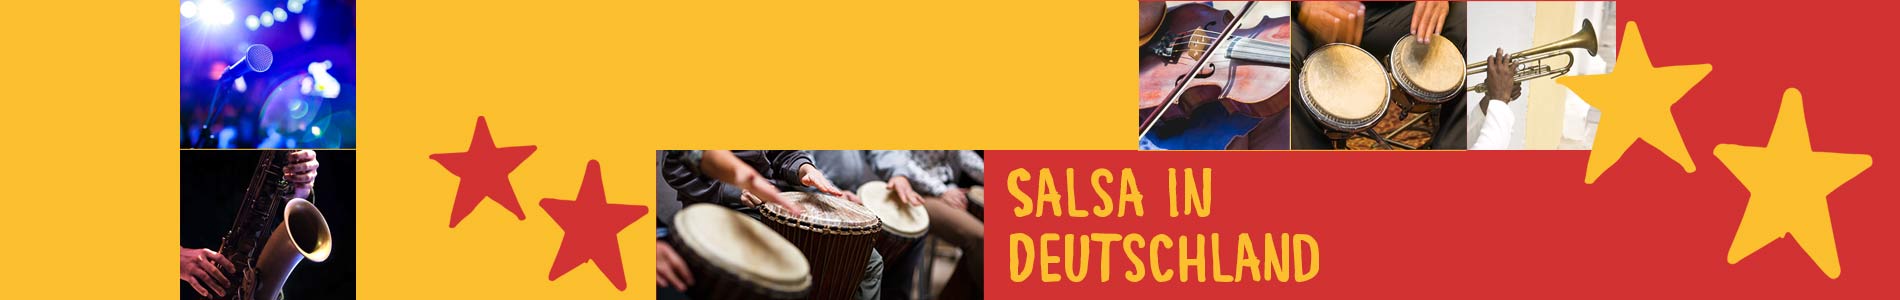 Salsa in Breitenthal – Salsa lernen und tanzen, Tanzkurse, Partys, Veranstaltungen